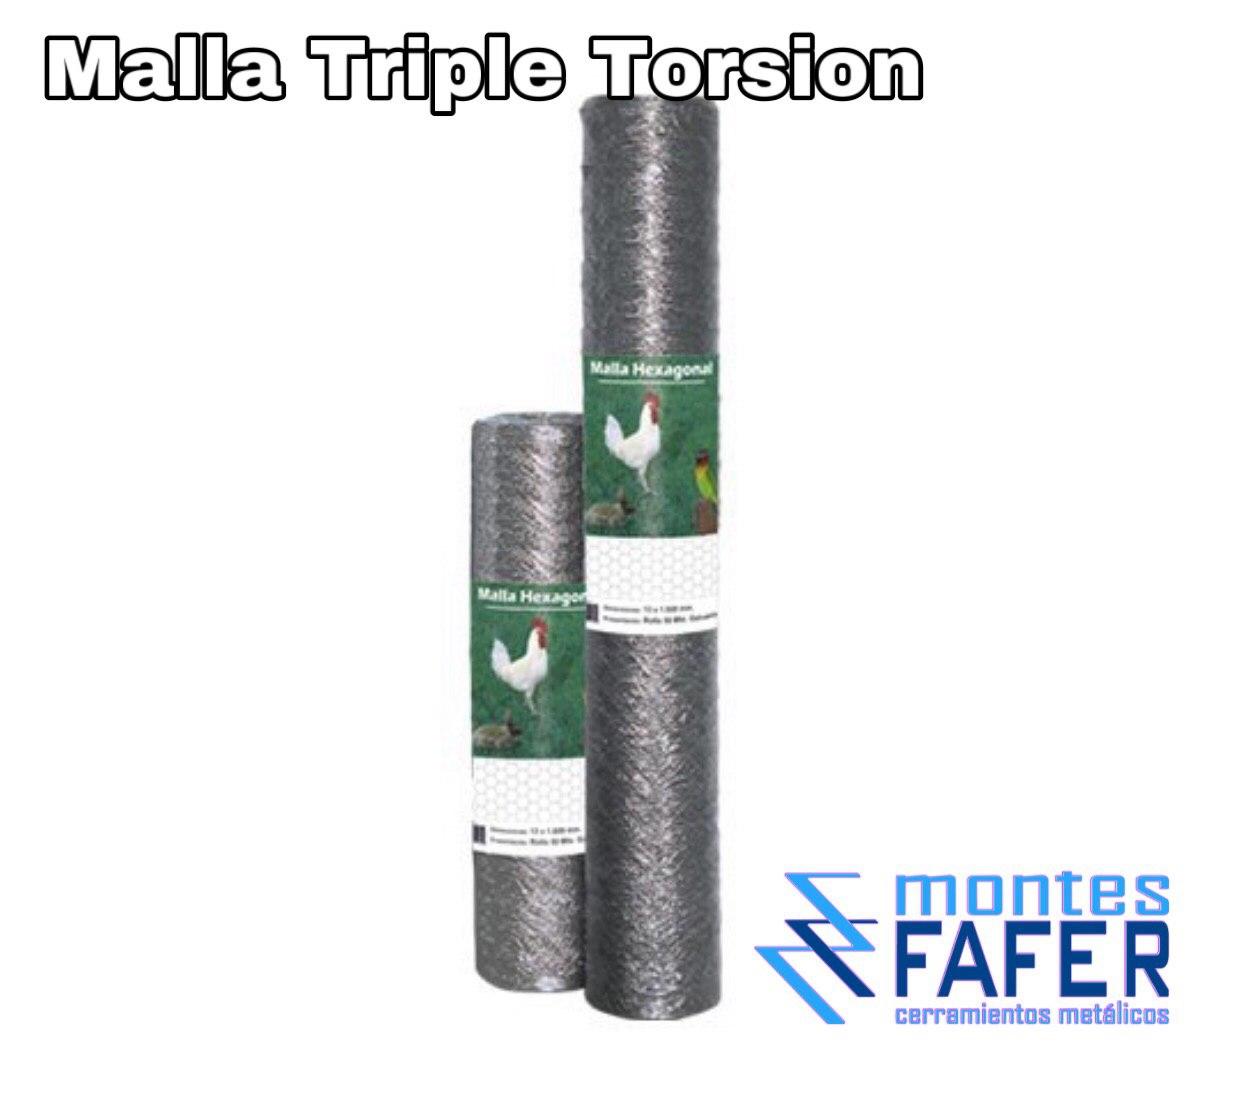 Malla tripe torsion MontesFafer